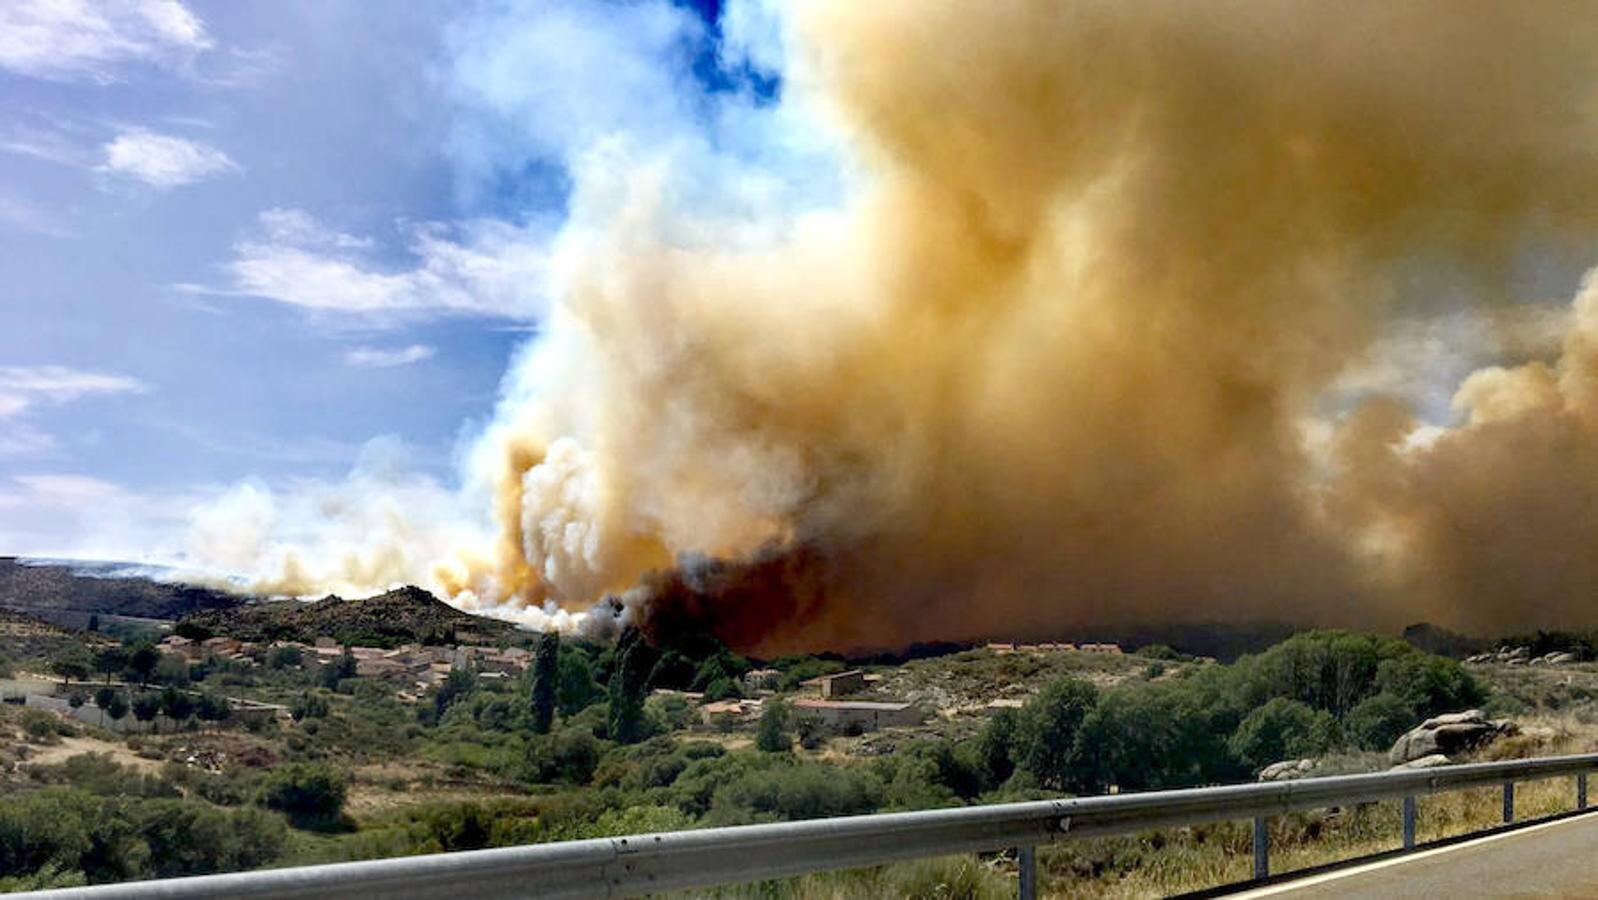 El fuego podría acercarse a los municipios de San Martín del Pimpollar y Hoyos de Miguel Muñoz y ya se ha pedido la colaboración de la UME